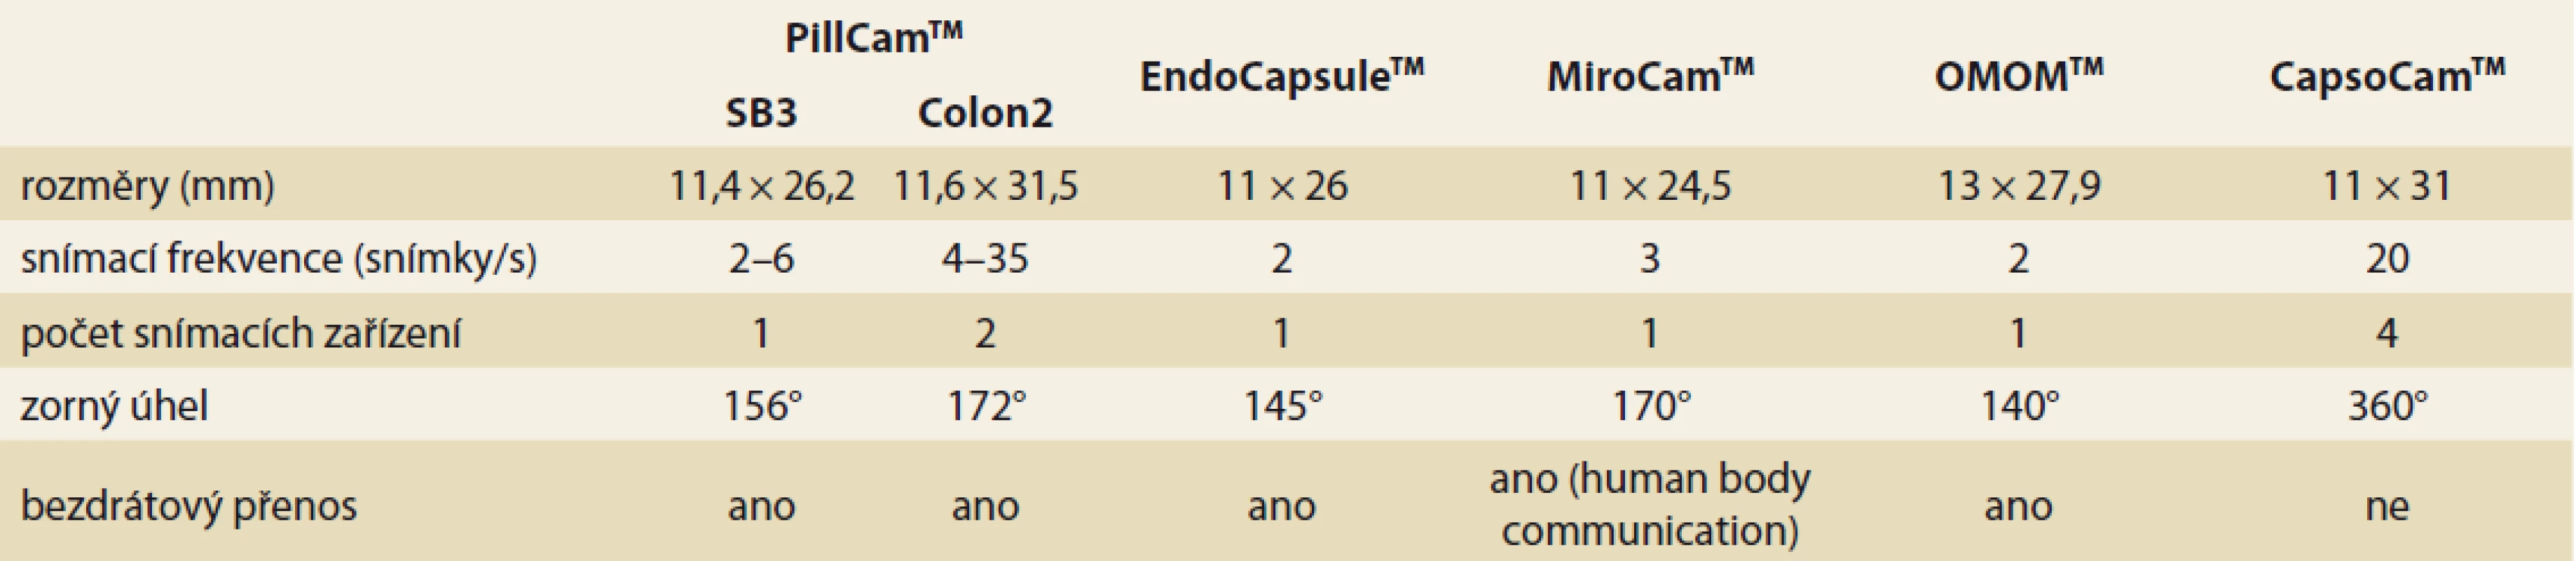 Základní technické parametry endoskopických kapslí (volně podle [100]).<br>
Tab.1. Basic technical  parameters of endoscopic capsules (freely according to  [100]).